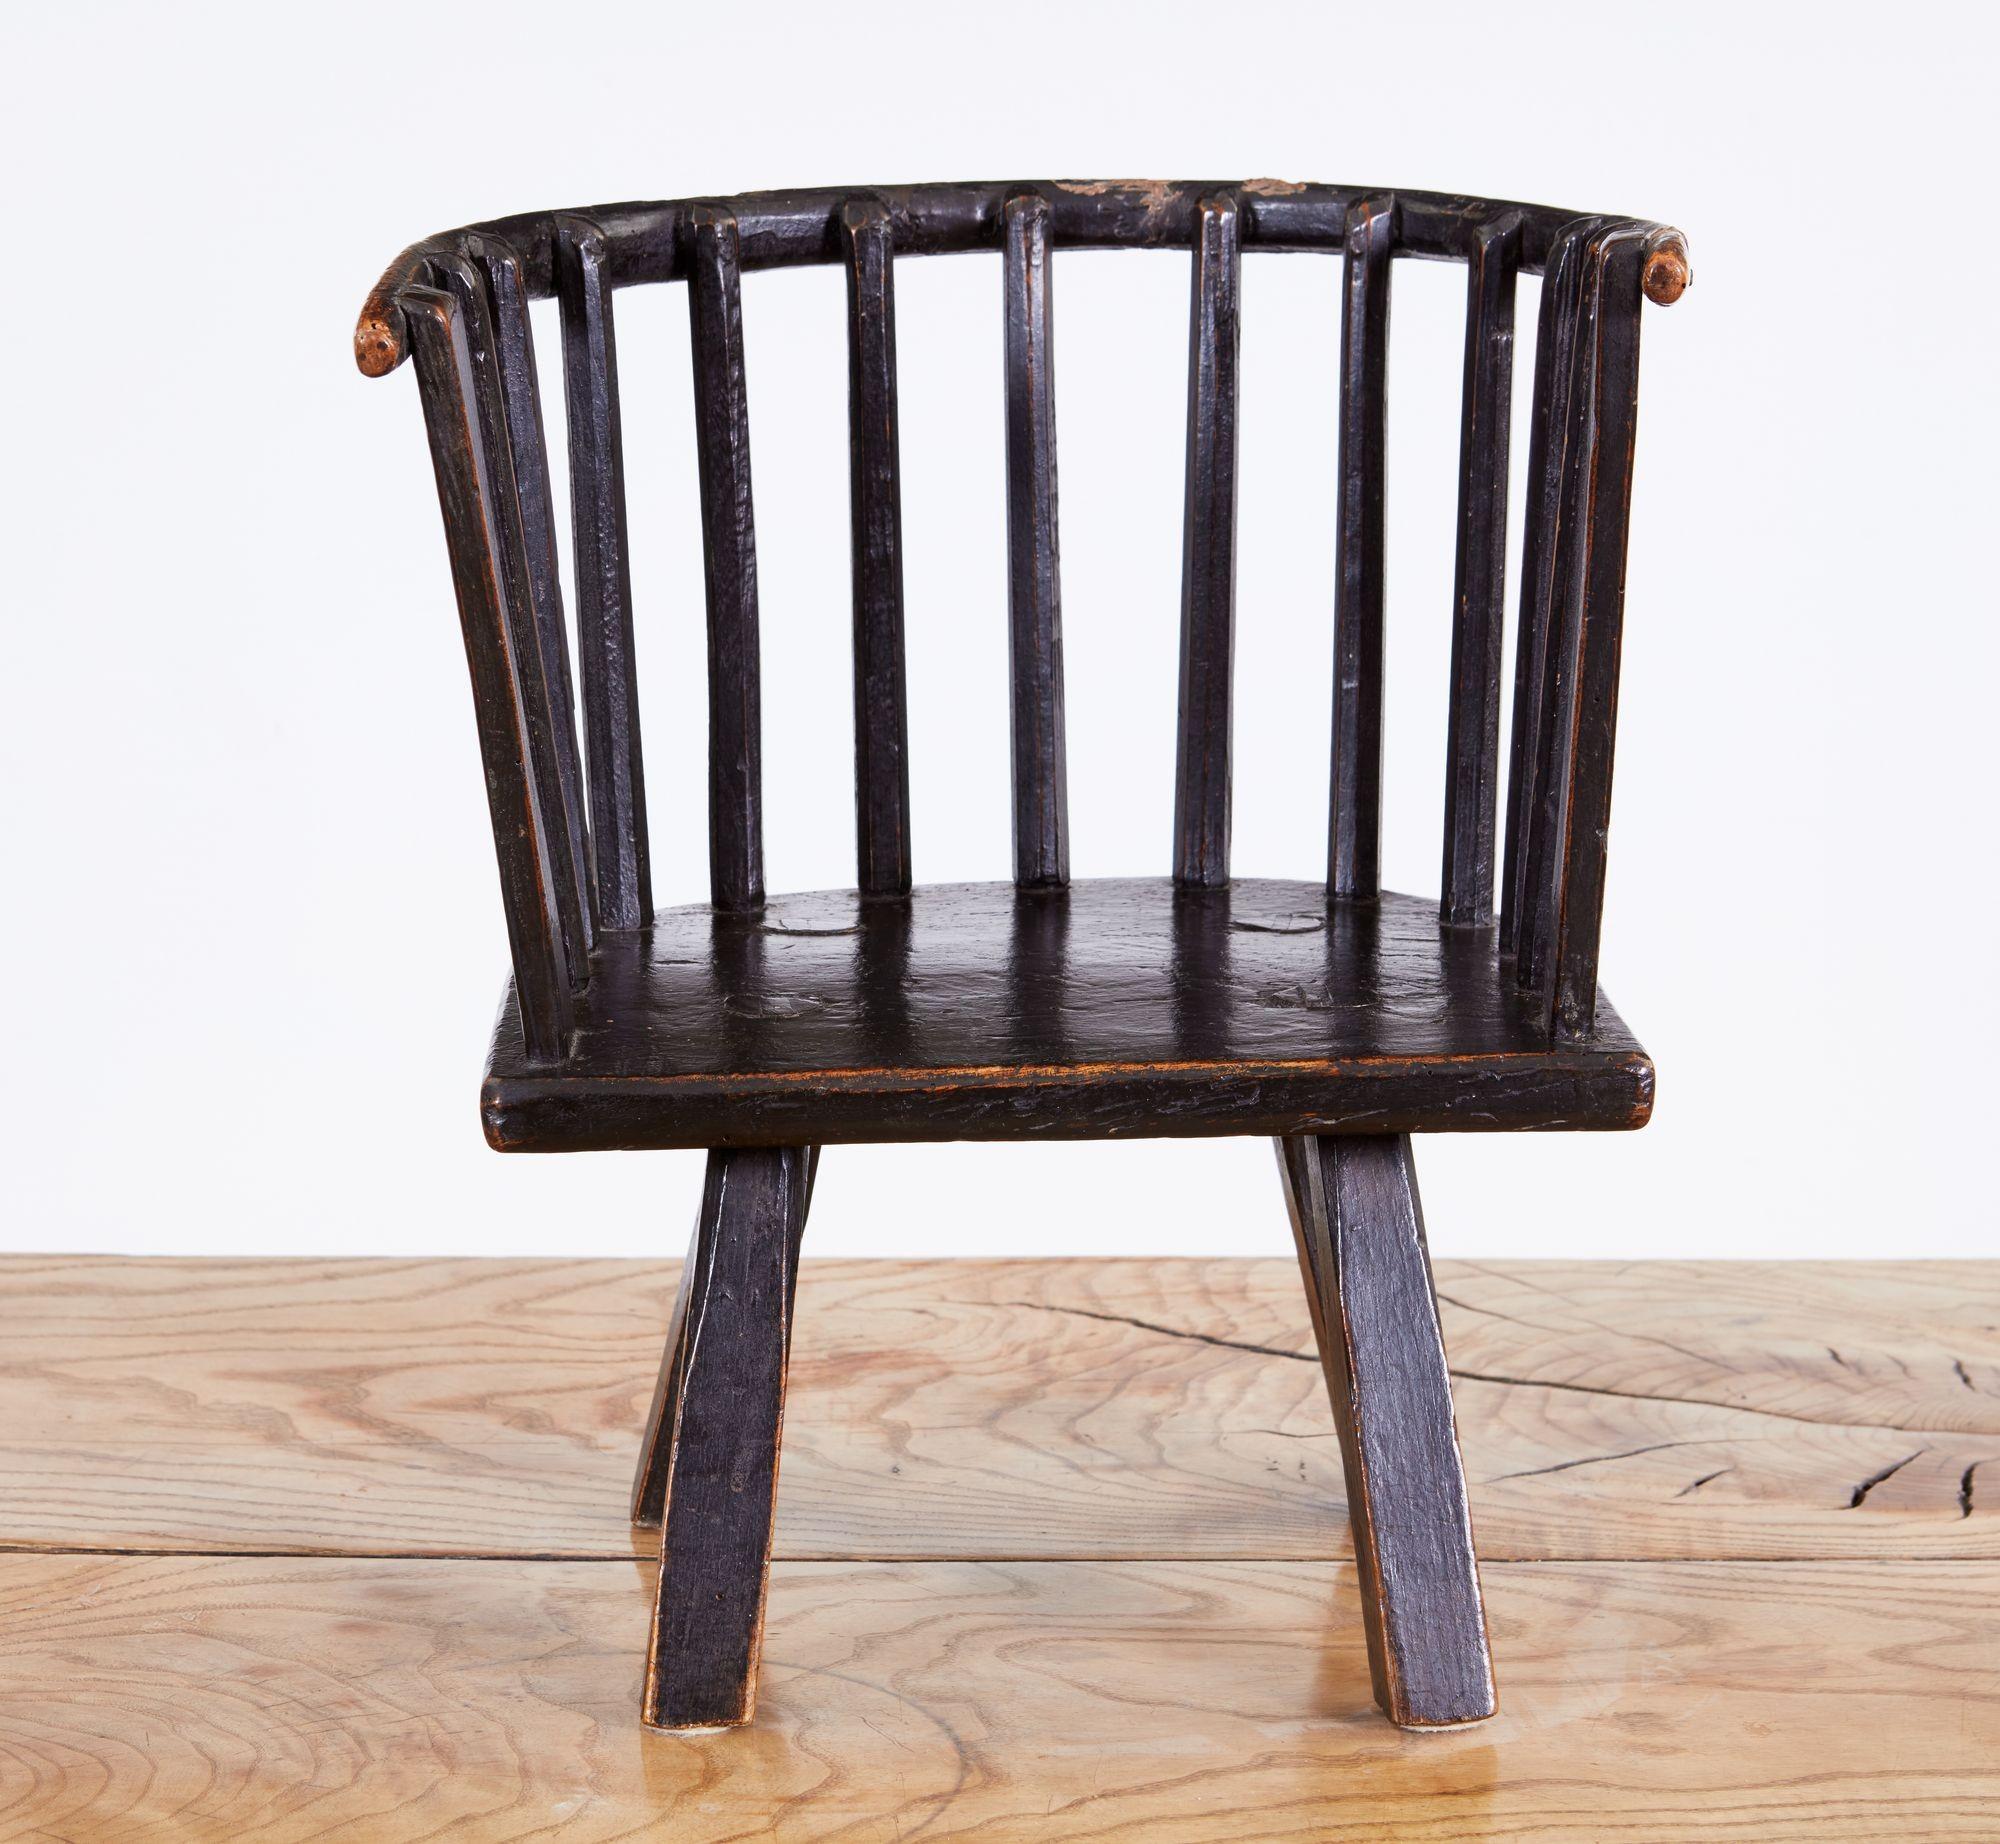 Wunderbare frühe 19. Jahrhundert ursprünglichen walisischen Kind Windsor Stuhl mit Bugholz zurück durch spokeshaved Spindeln über 